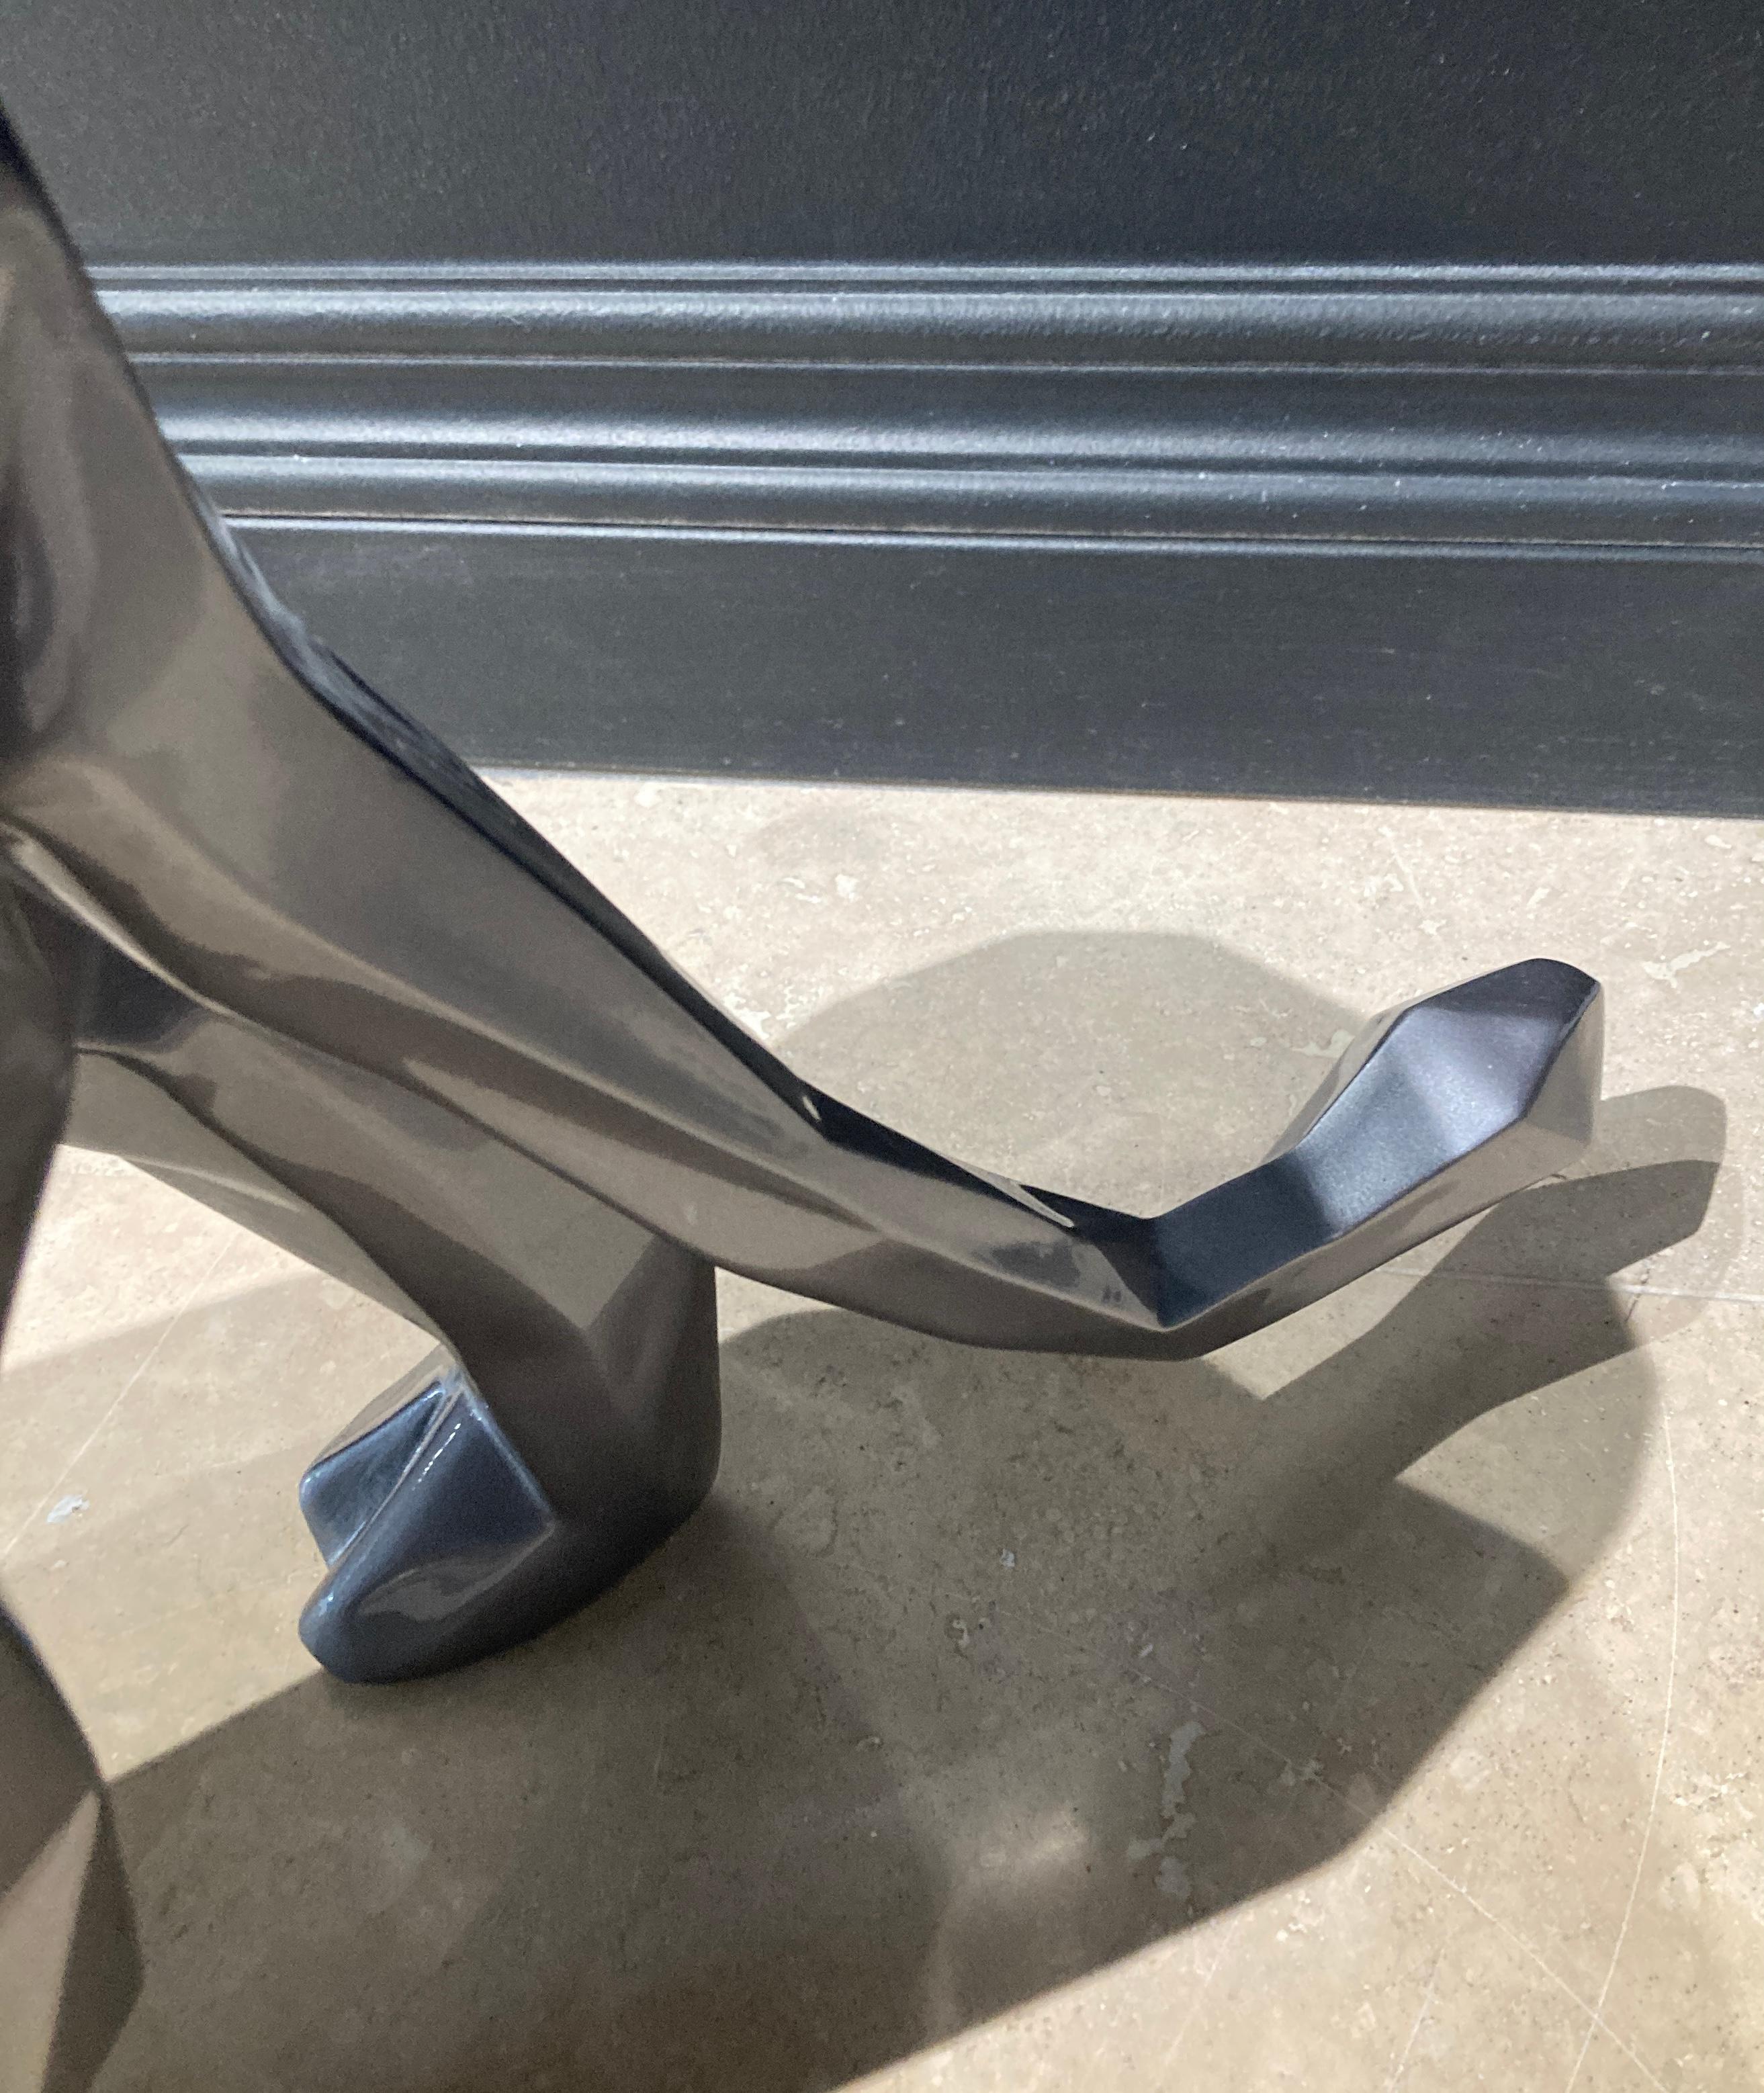 Lion - 80 cm Gris Metal 8/8 - Contemporary Sculpture by Richard Orlinski